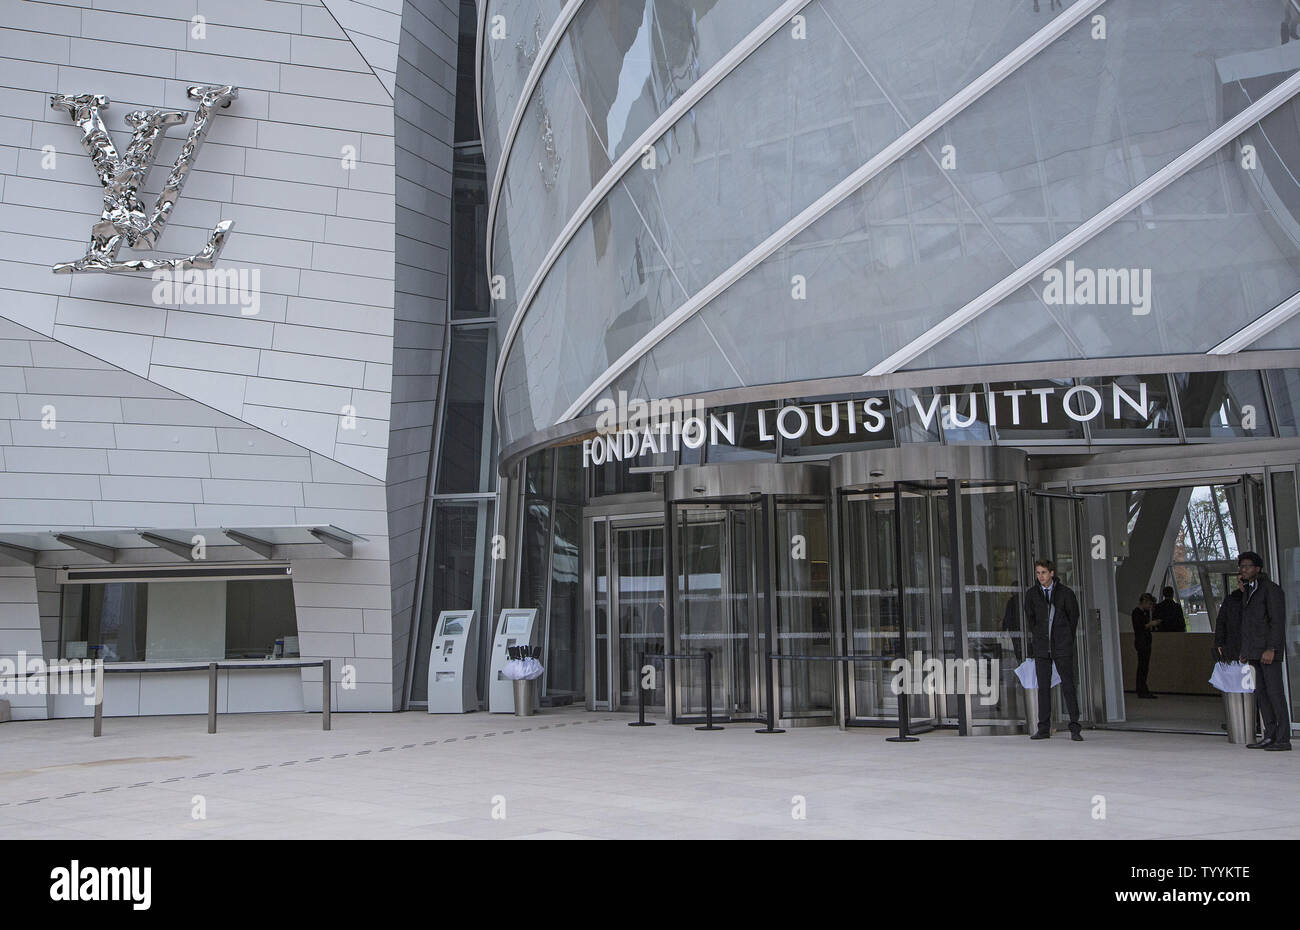 The Fondation Louis Vuitton opens in Paris